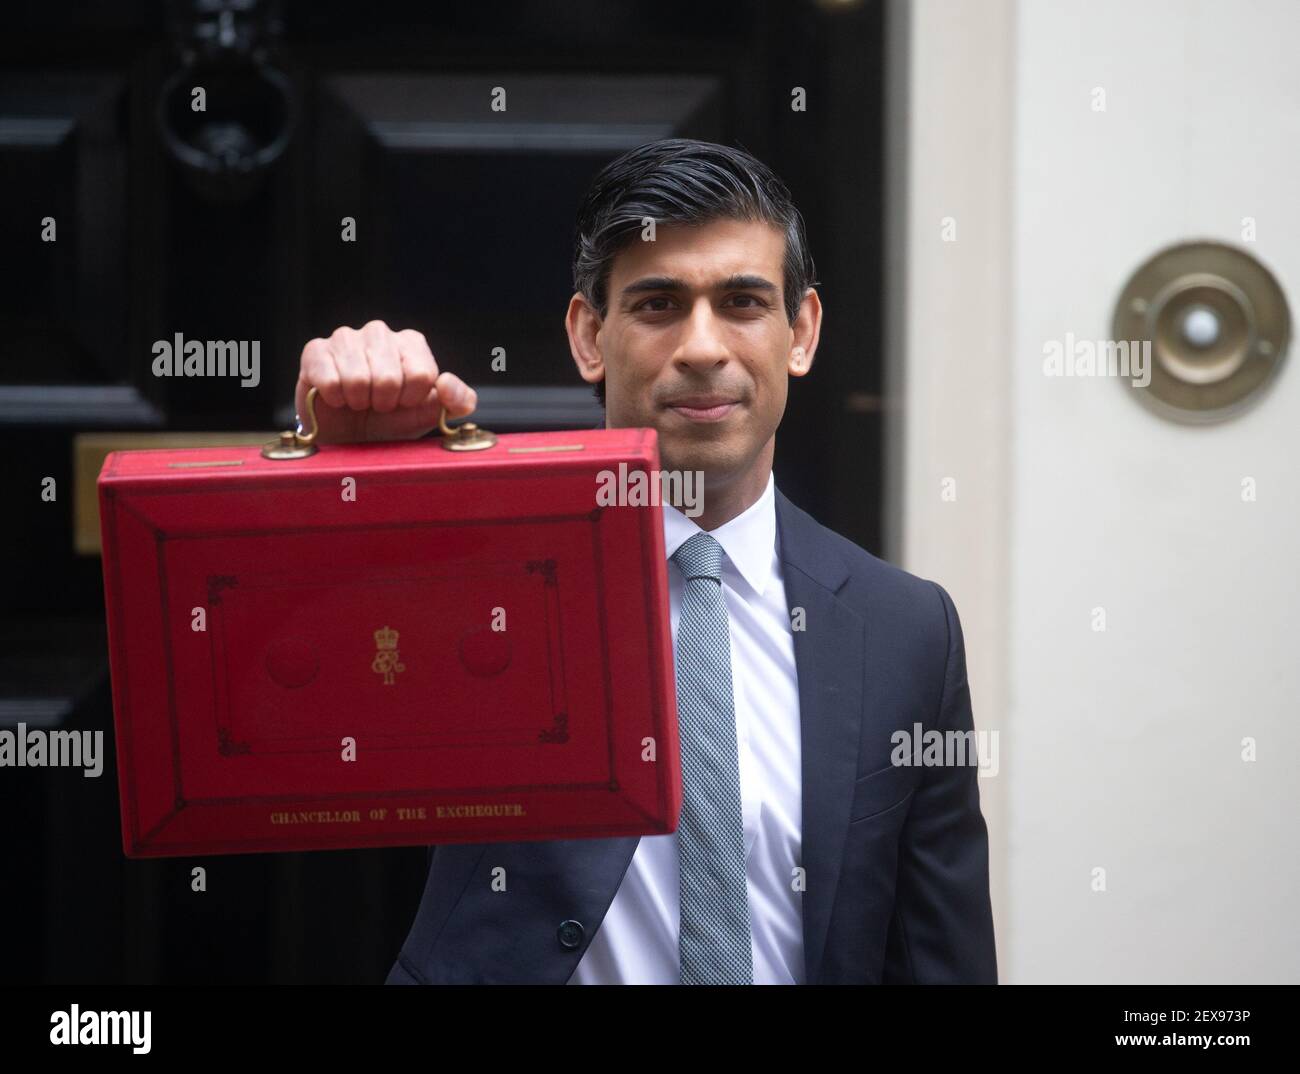 Il Cancelliere dello scacchiere, Rishi Sunak, tiene la famosa valigetta  rossa, Gladstone's Red Box, prima di dirigersi al Parlamento per consegnare  il suo bilancio Foto stock - Alamy